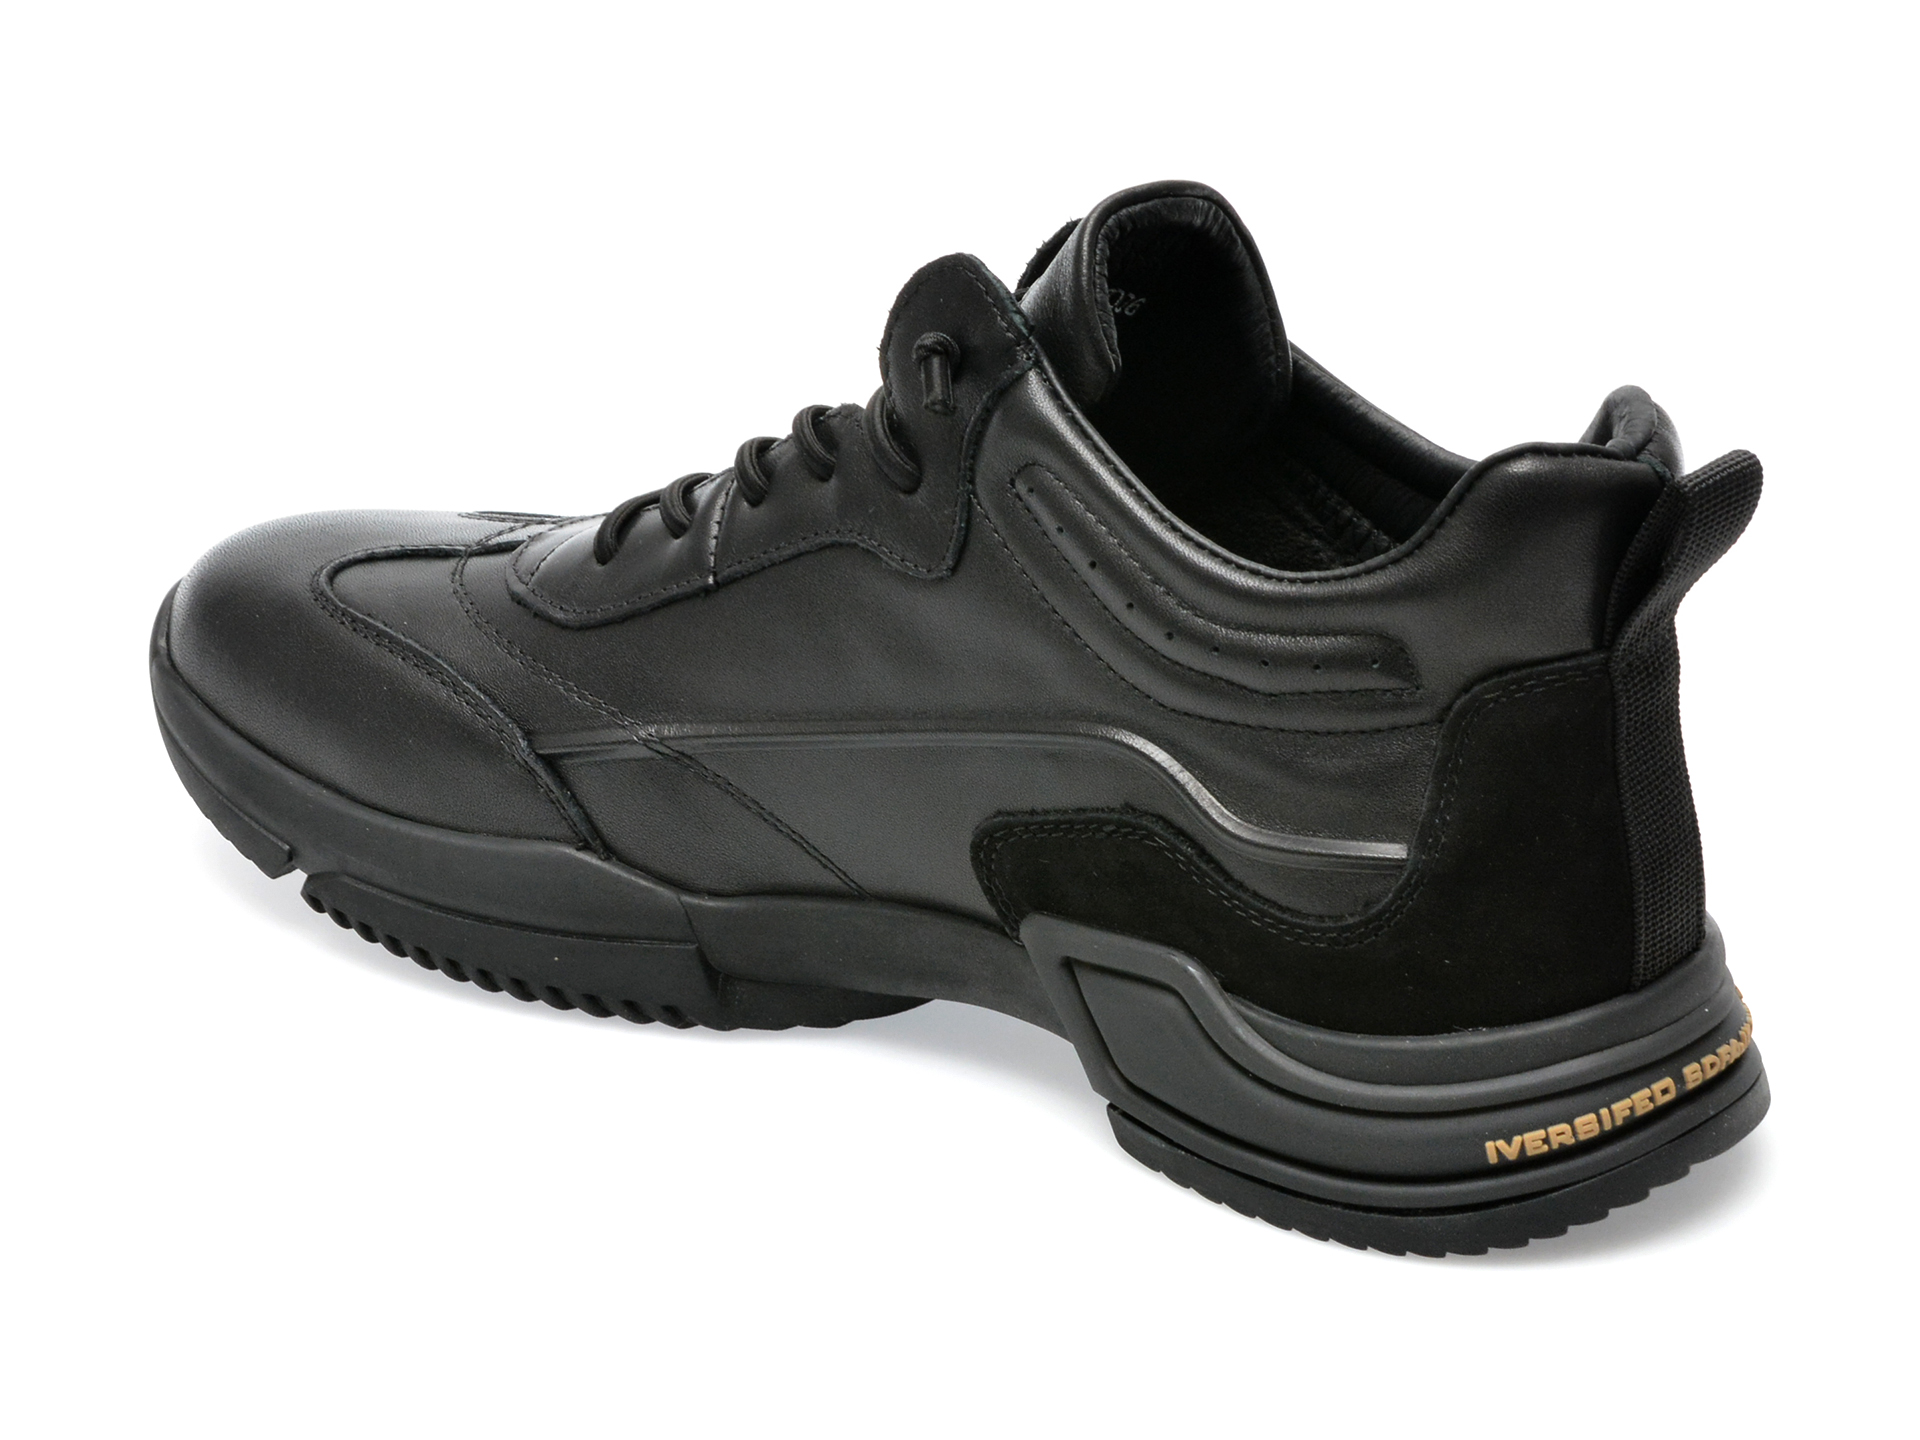 Poze Pantofi sport OTTER negri, J200006, din piele naturala Tezyo